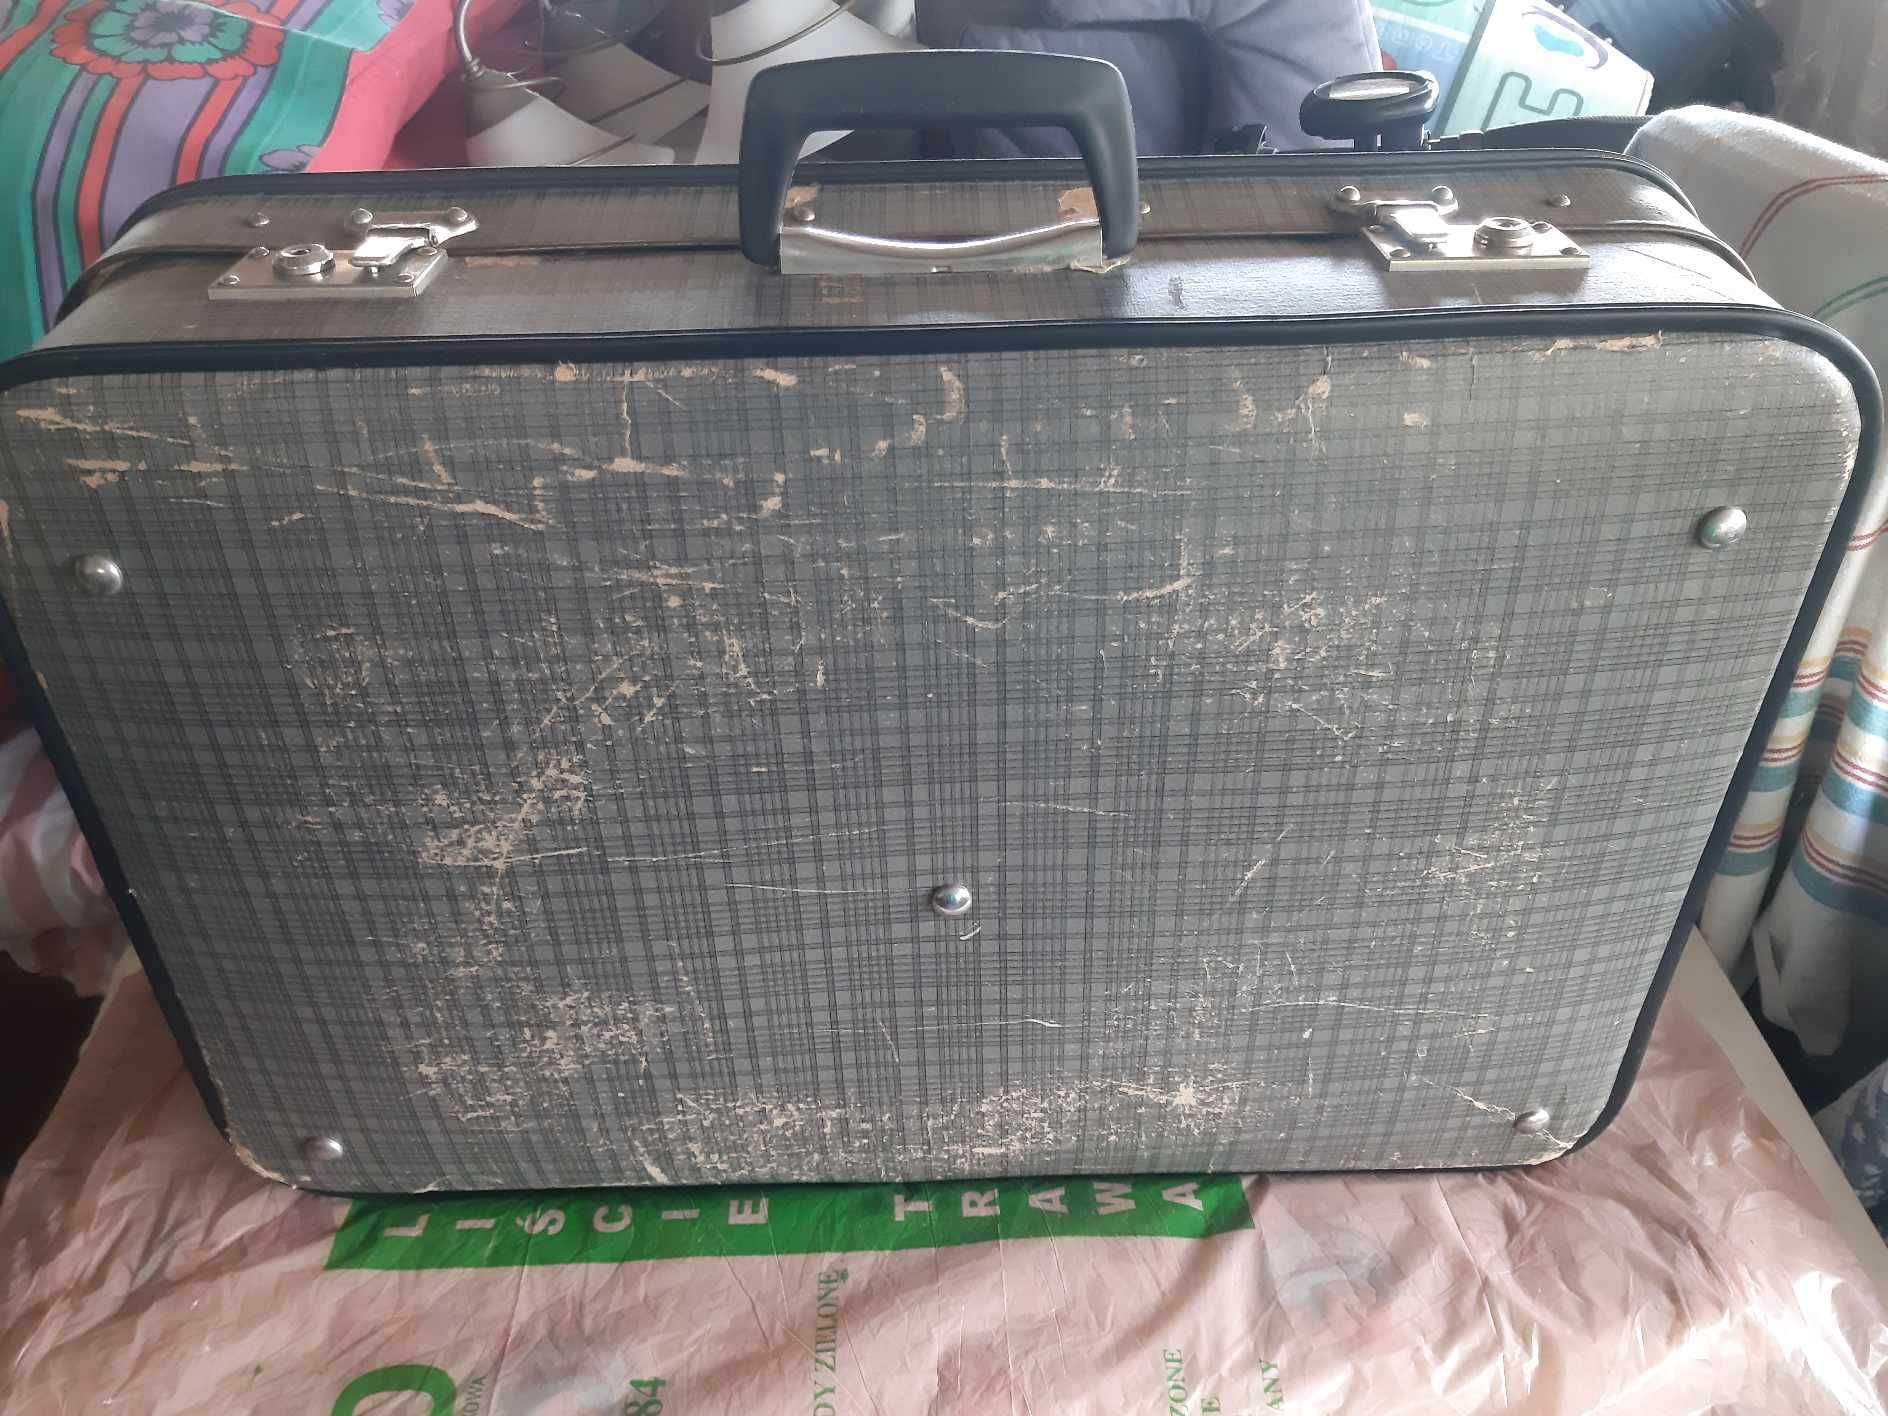 walizka stara z strychu babci wymiar 60 cm X 40 cm X 14 cm